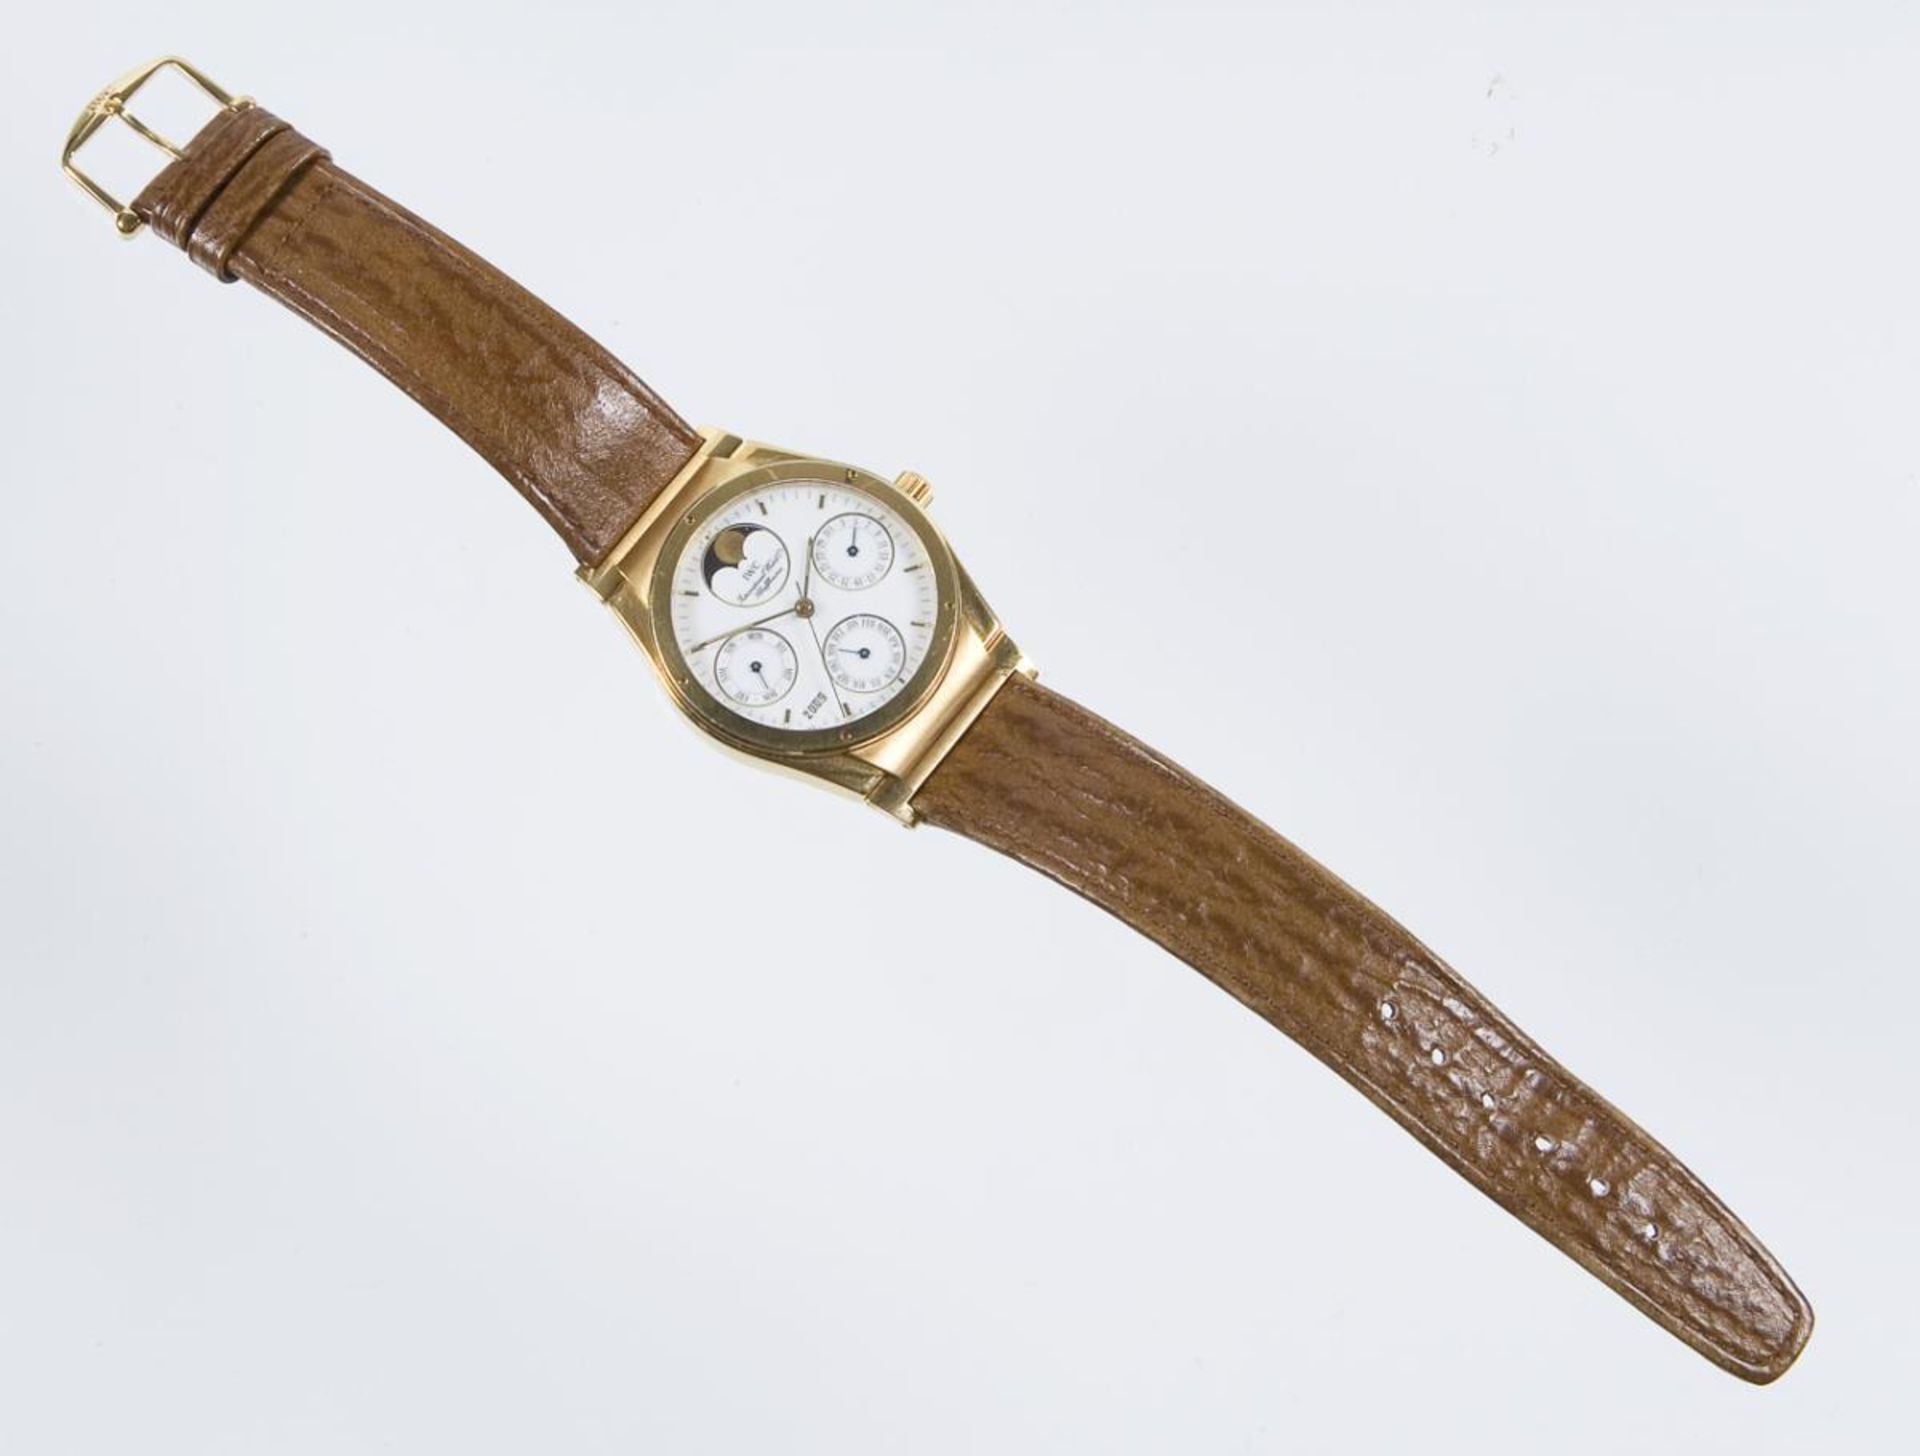 Armbanduhr: Ingenieur Perpetual Calendar in Gold.. IWC SCHAFFHAUSEN.| siehe Nachtrag - Bild 3 aus 6